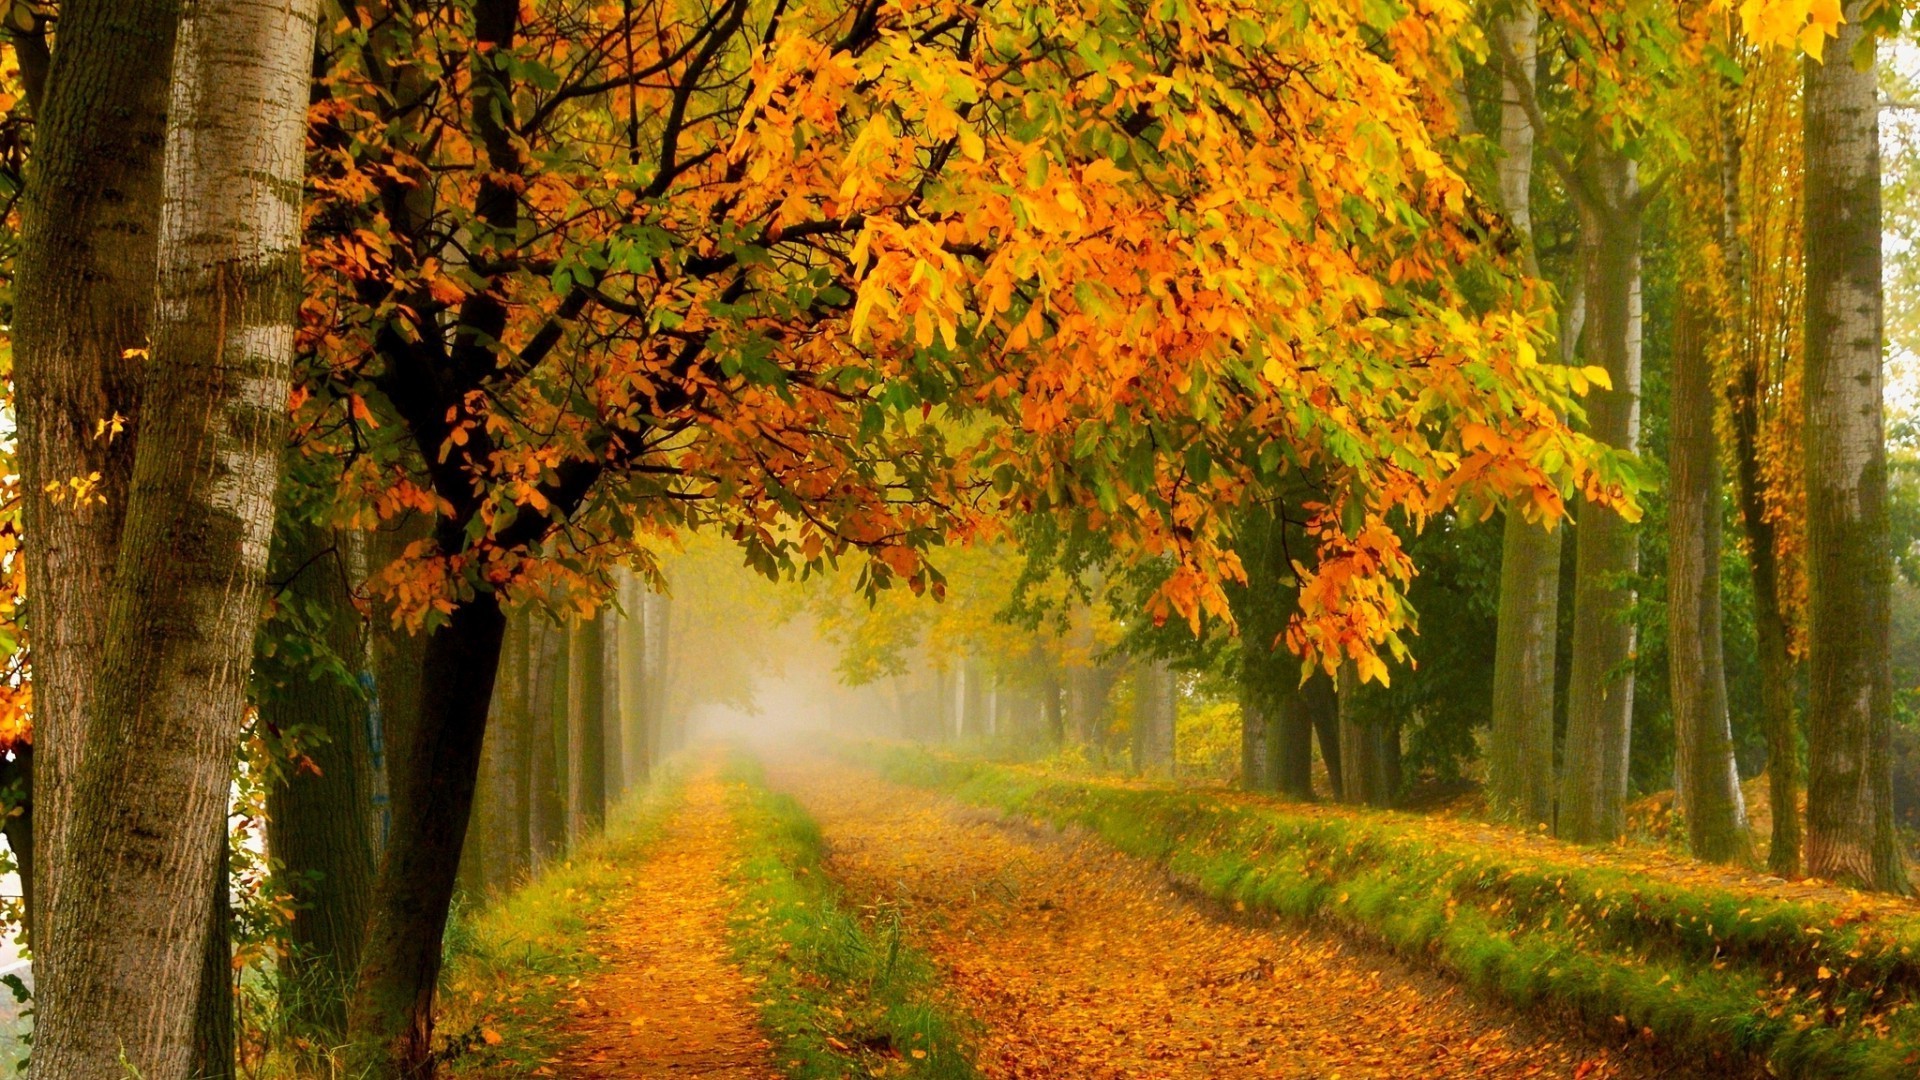 осень осень лист древесины дерево кленовый природа парк пейзаж туман туман рассвет на открытом воздухе живописный сезон дорога пышные хорошую погоду сельской местности аллея